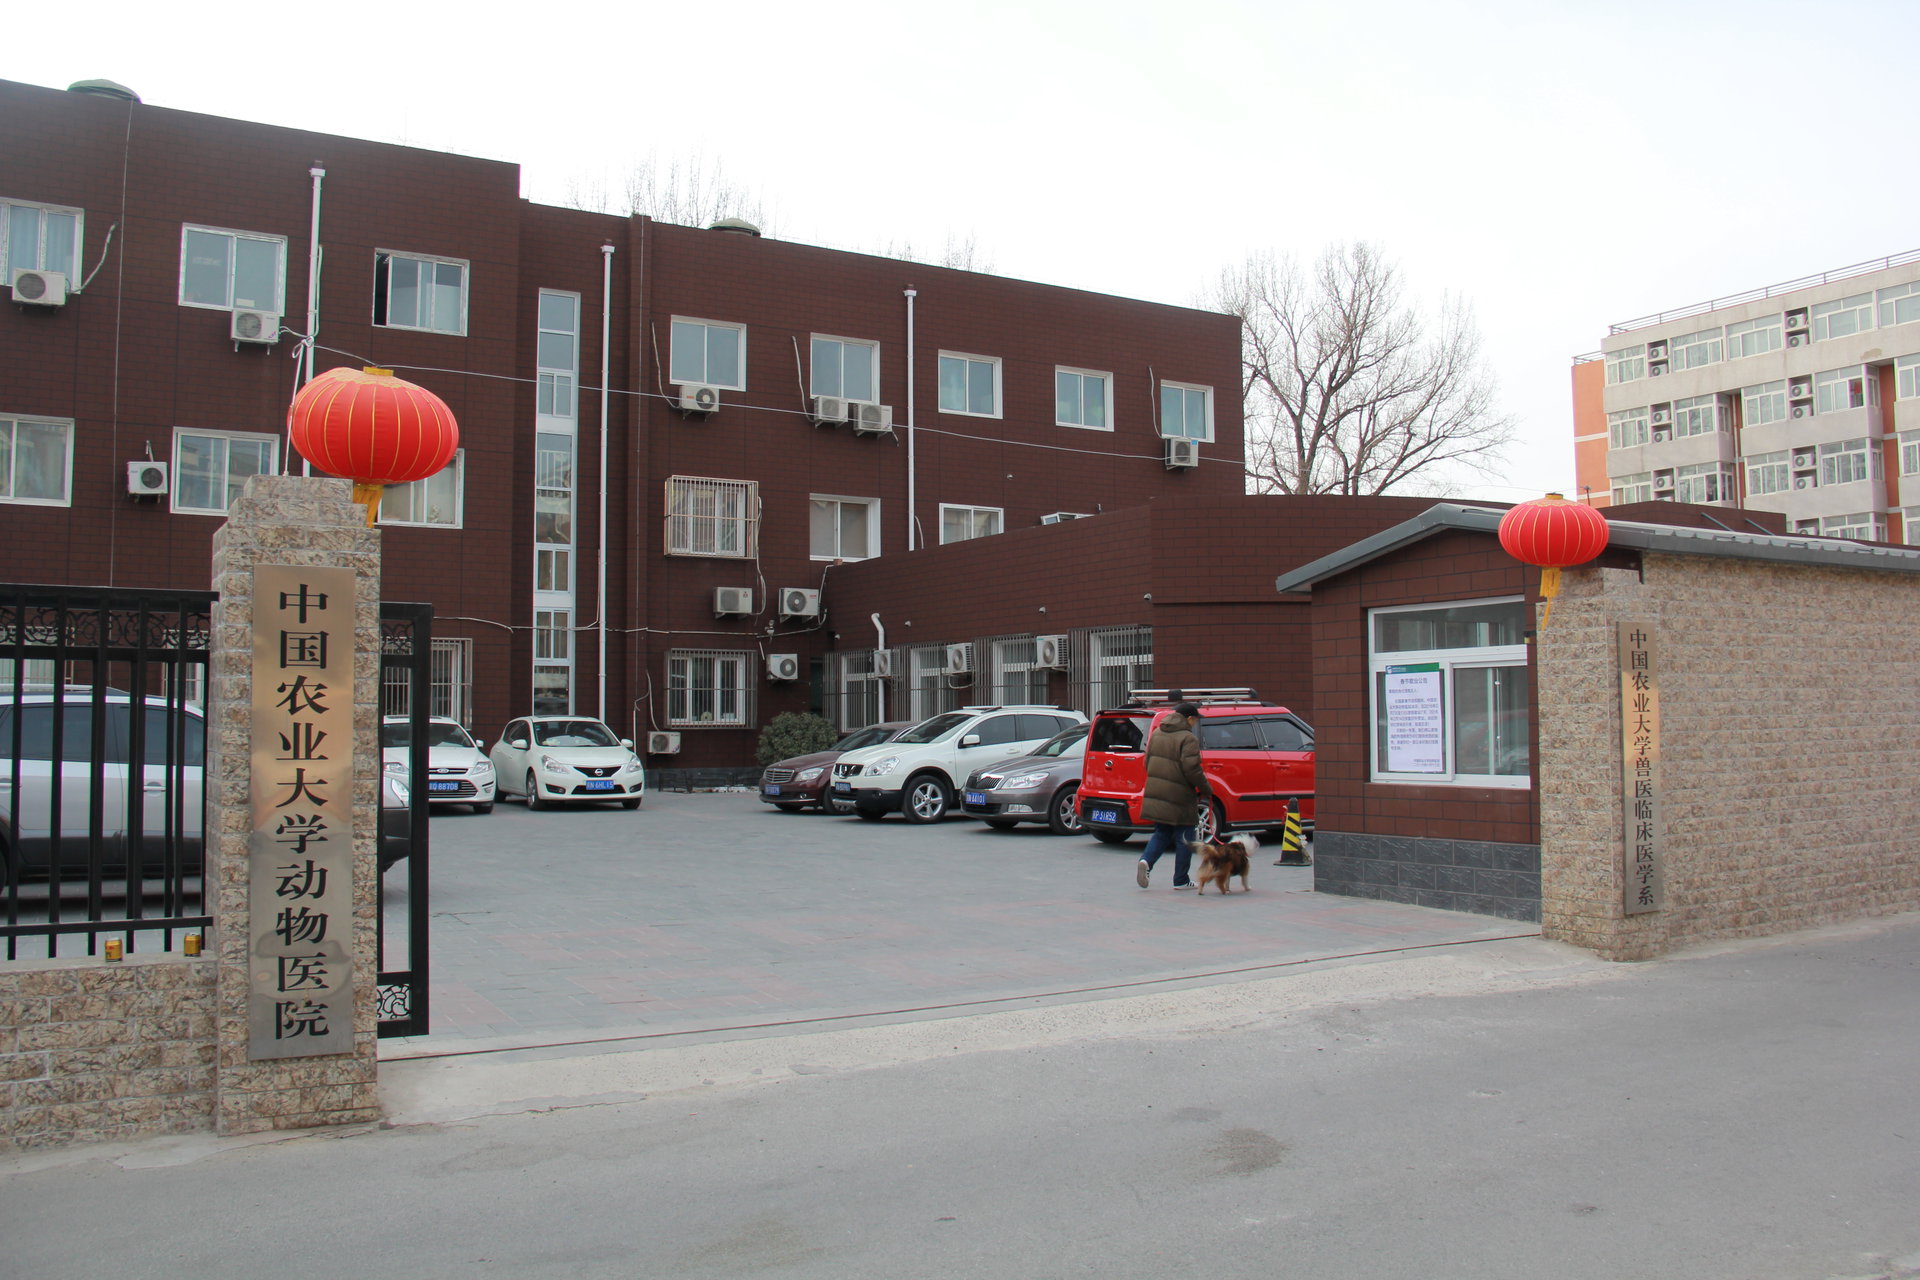 中國農業大學動物醫院